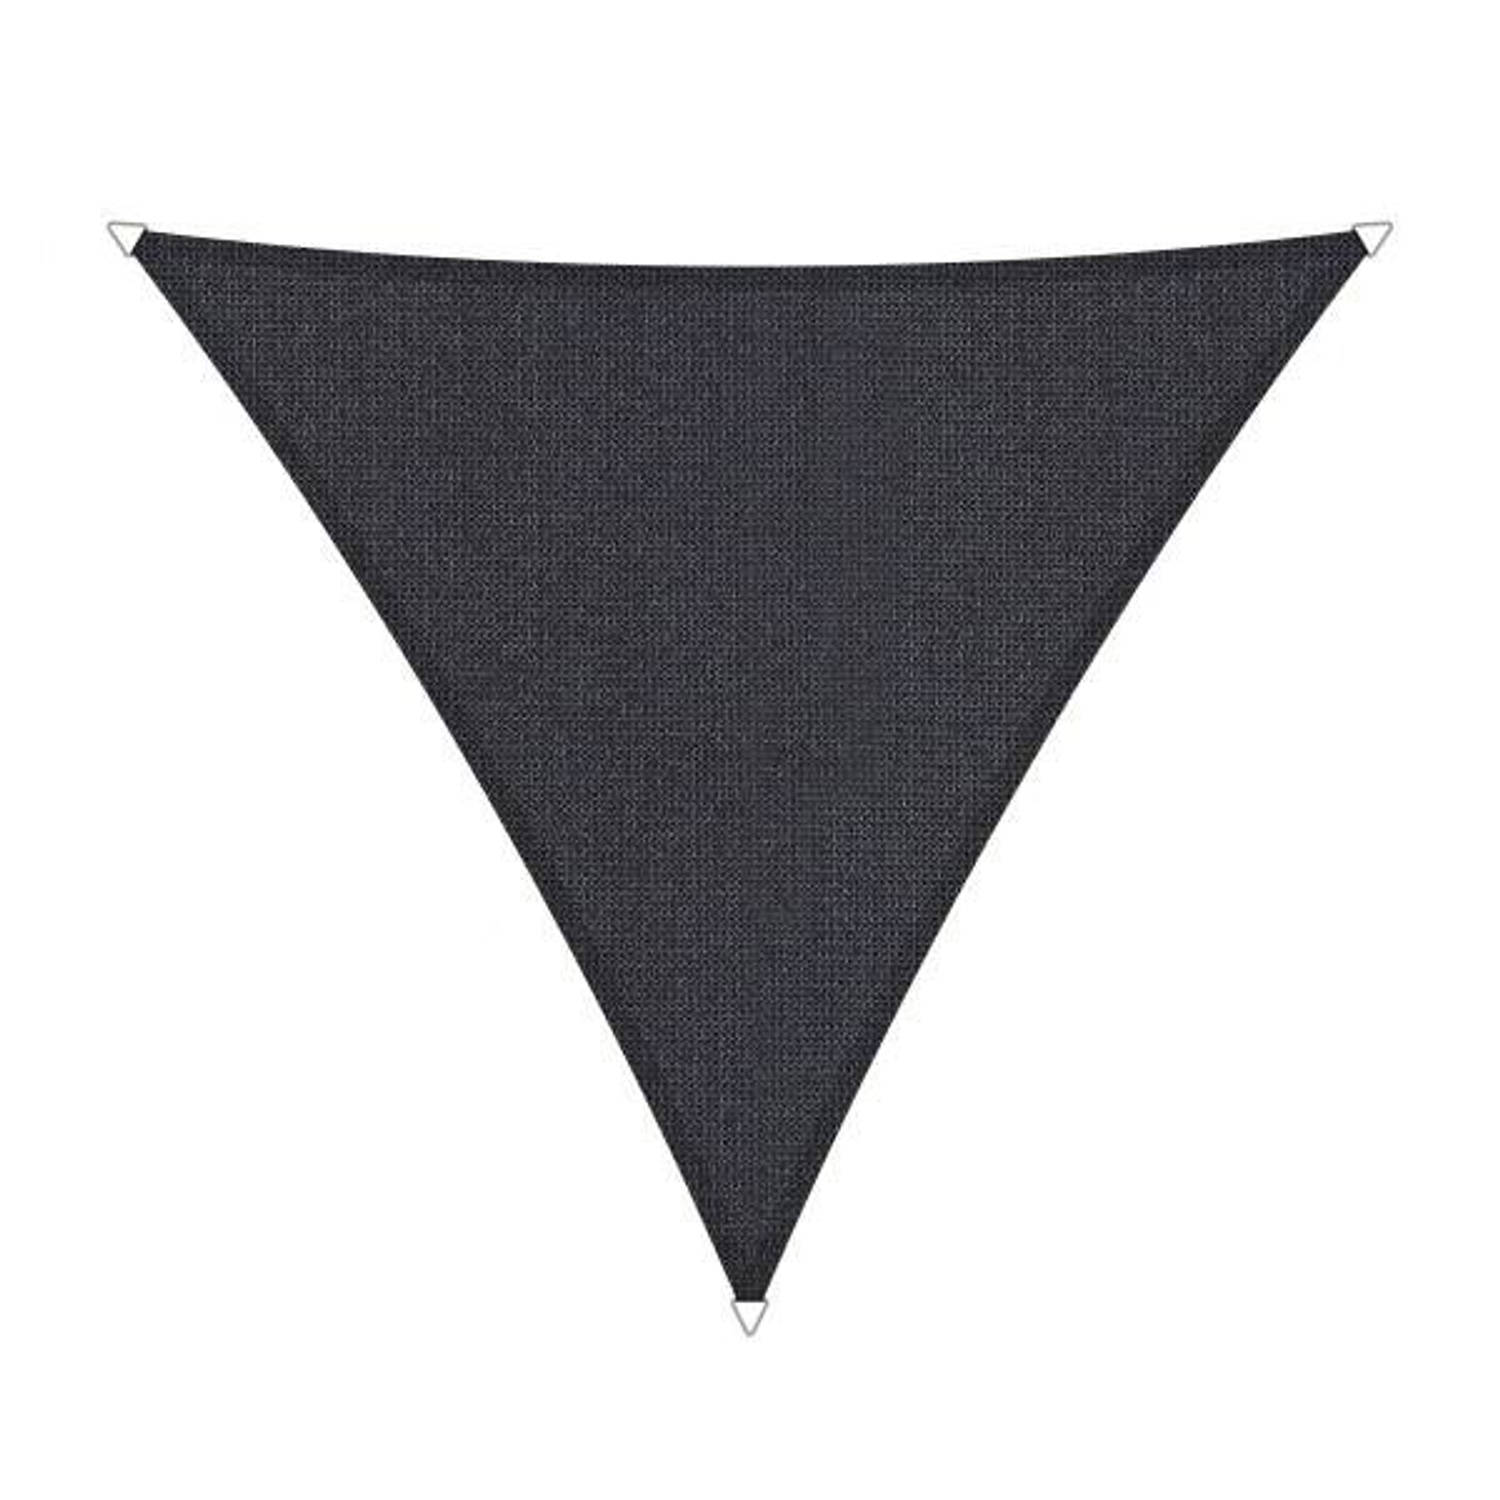 Shadow Comfort driehoek 5x5x5m Carbon Grey met bevestigingsset